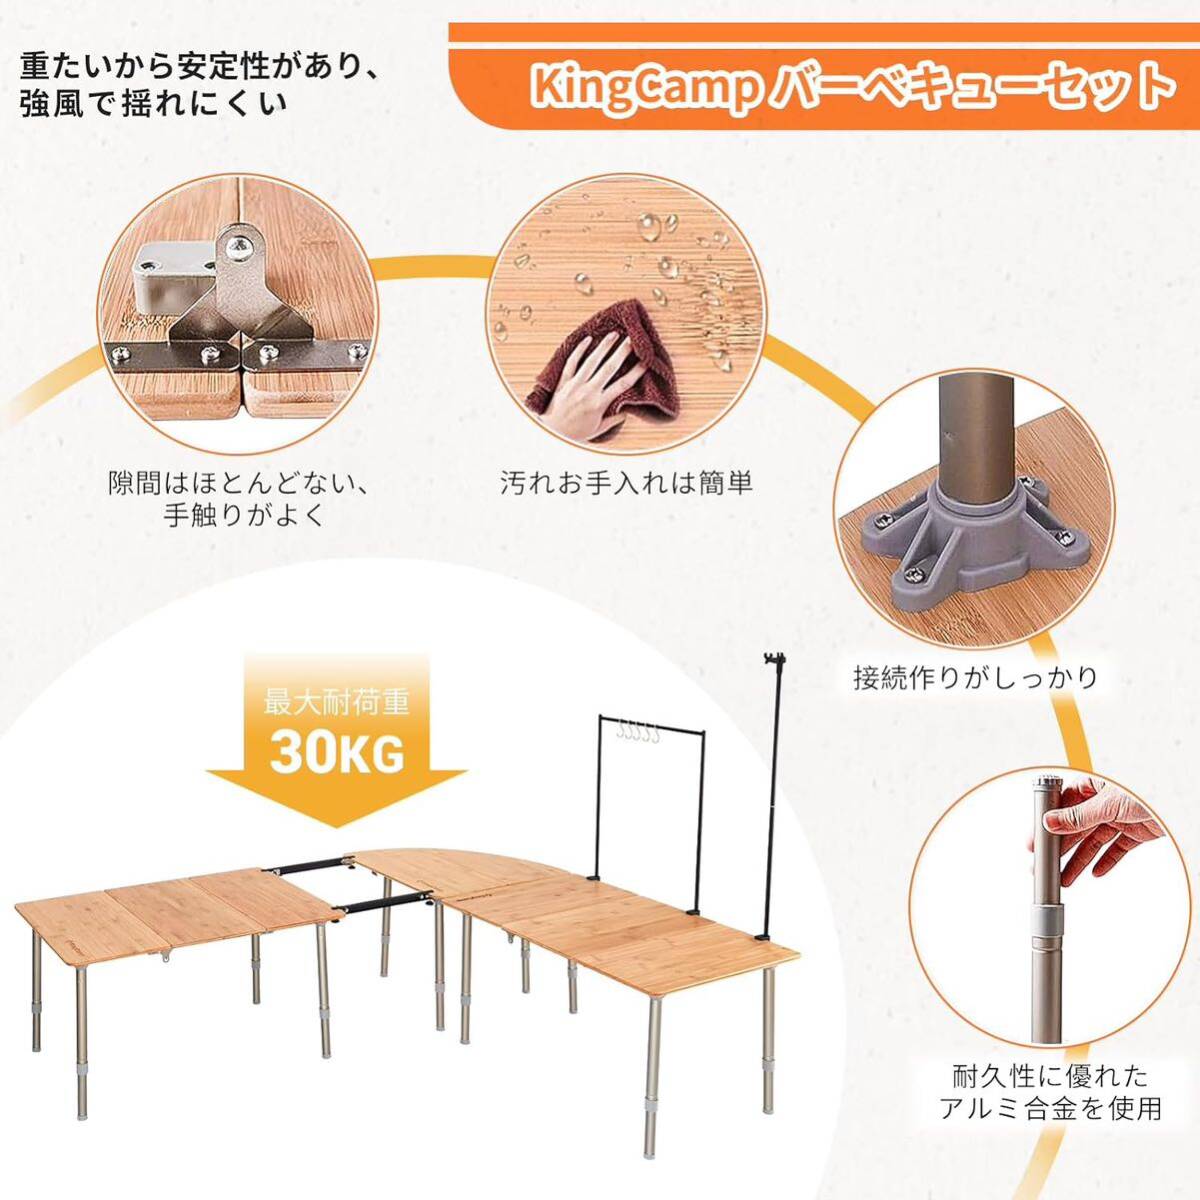 【KingCamp】キャンプ テーブル アウトドア 折り畳み 6点セット